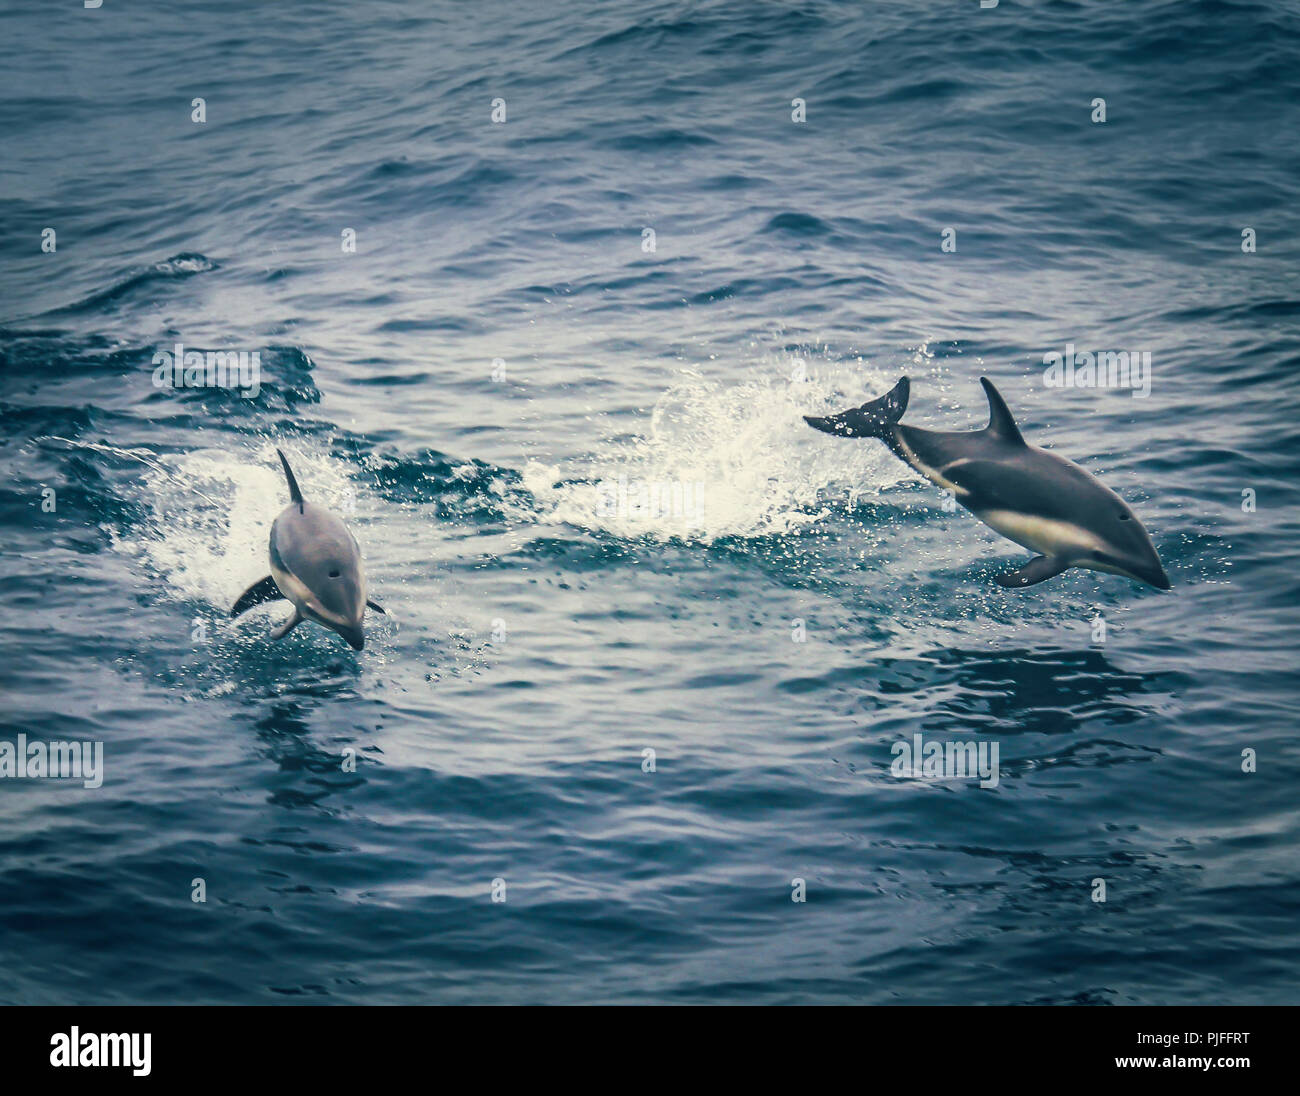 Dusky i delfini nuotare a fianco l'imbarcazione durante una crociera avvistamento balene nell'Oceano Pacifico off Kaikoura, Isola del Sud, Nuova Zelanda Foto Stock